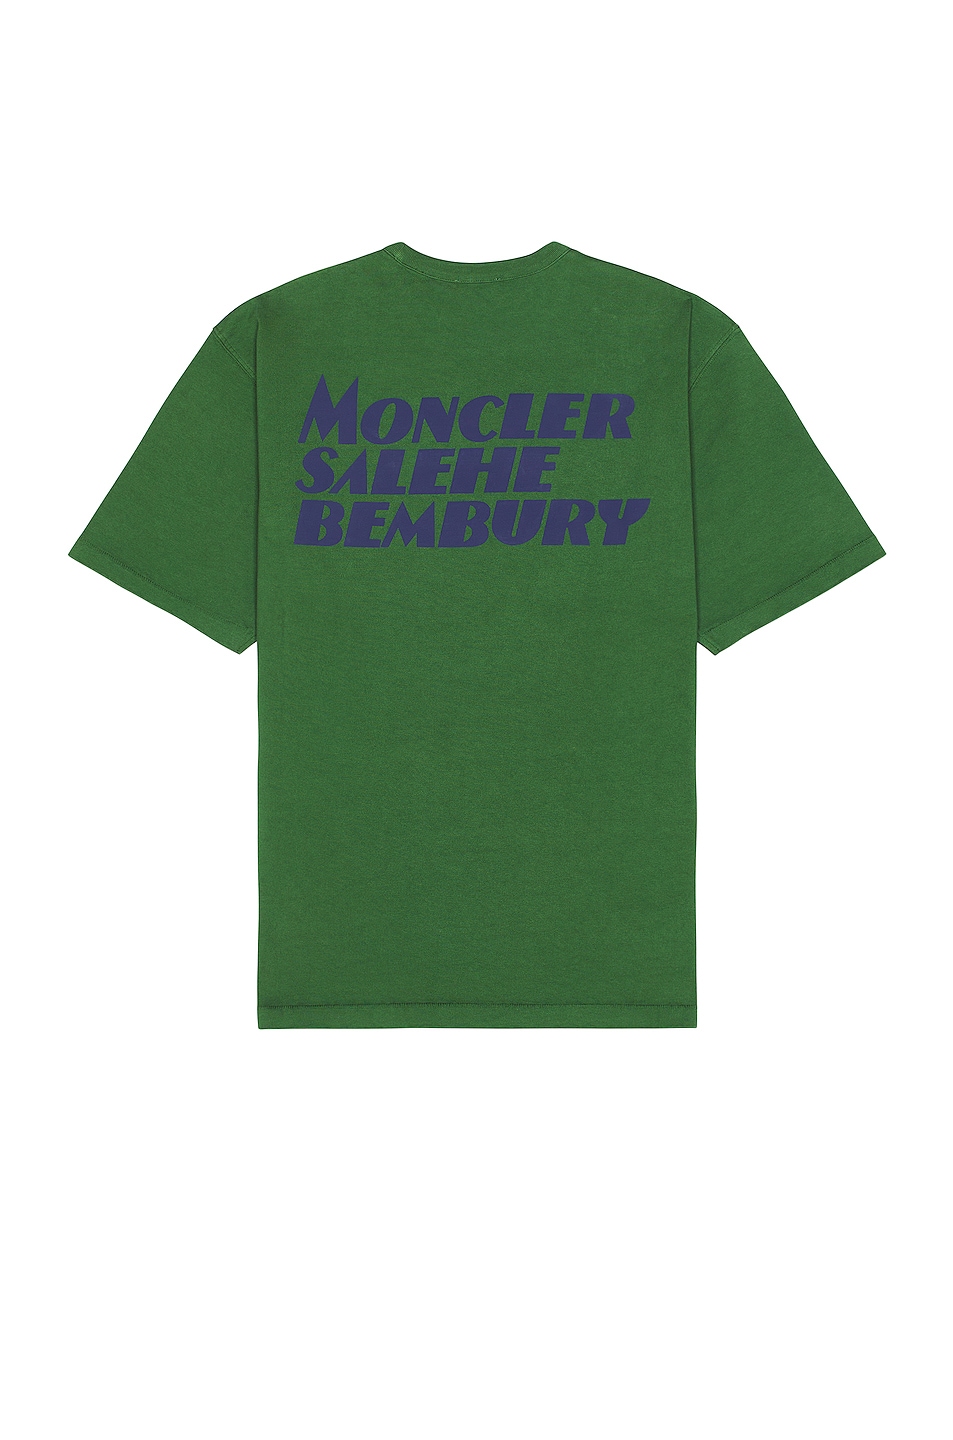 Image 1 of Moncler Genius Moncler x Salehe Bembury Logo T-shirt in Green